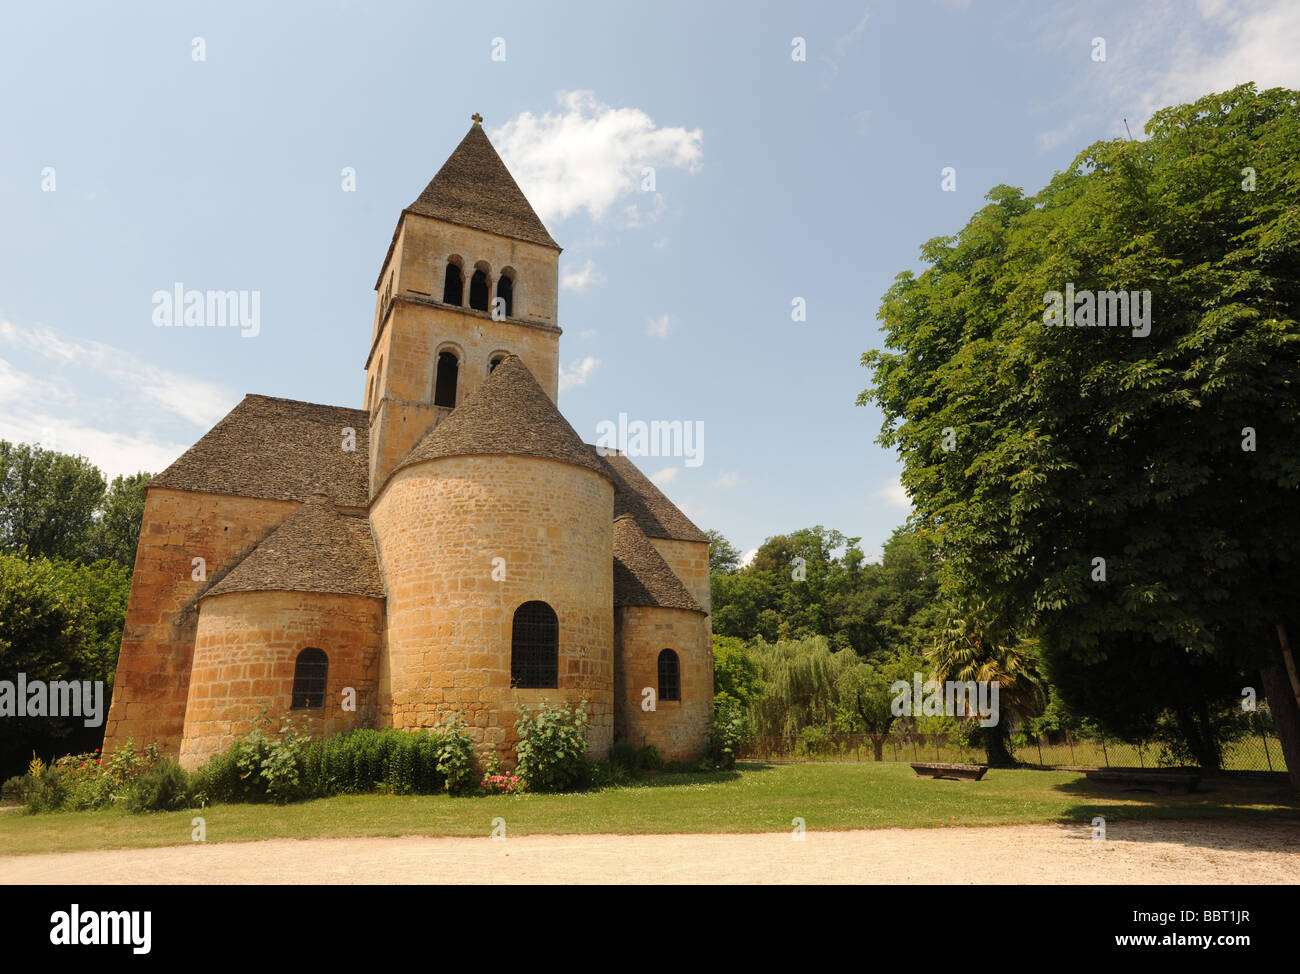 L'église de pierre à St Leon sur Vezere en Dordogne France Banque D'Images